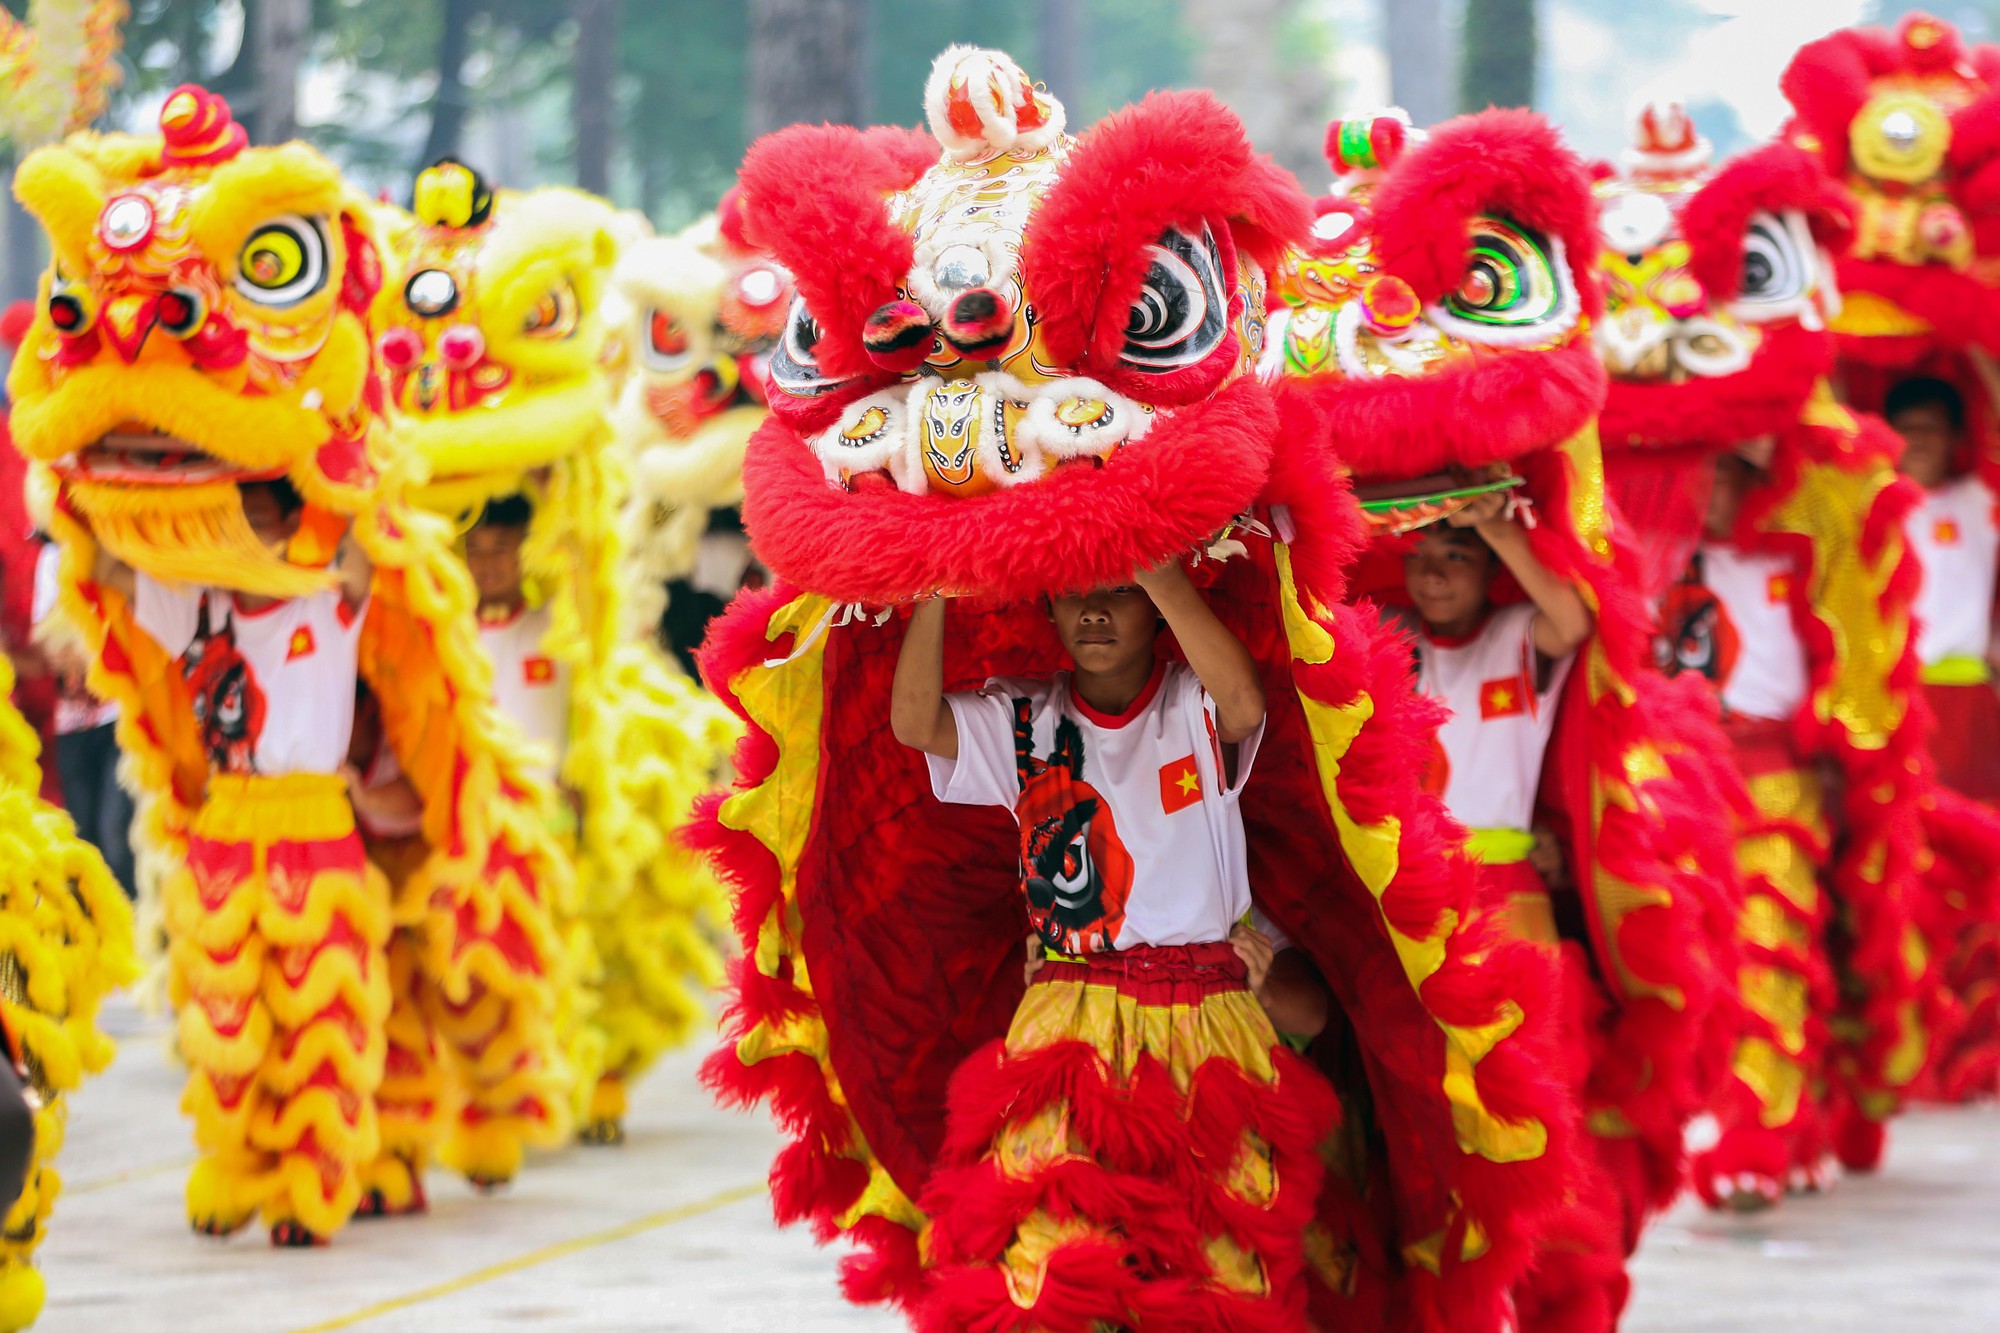 Tết Người Hoa luôn là một trong những lễ hội đặc sắc của người dân Sài Gòn. Hãy cùng xem những hình ảnh đầy màu sắc để tham quan những điều đặc biệt, những sản vật độc đáo đến từ quan niệm, truyền thống và tâm linh của người Hoa trong dịp Tết này.